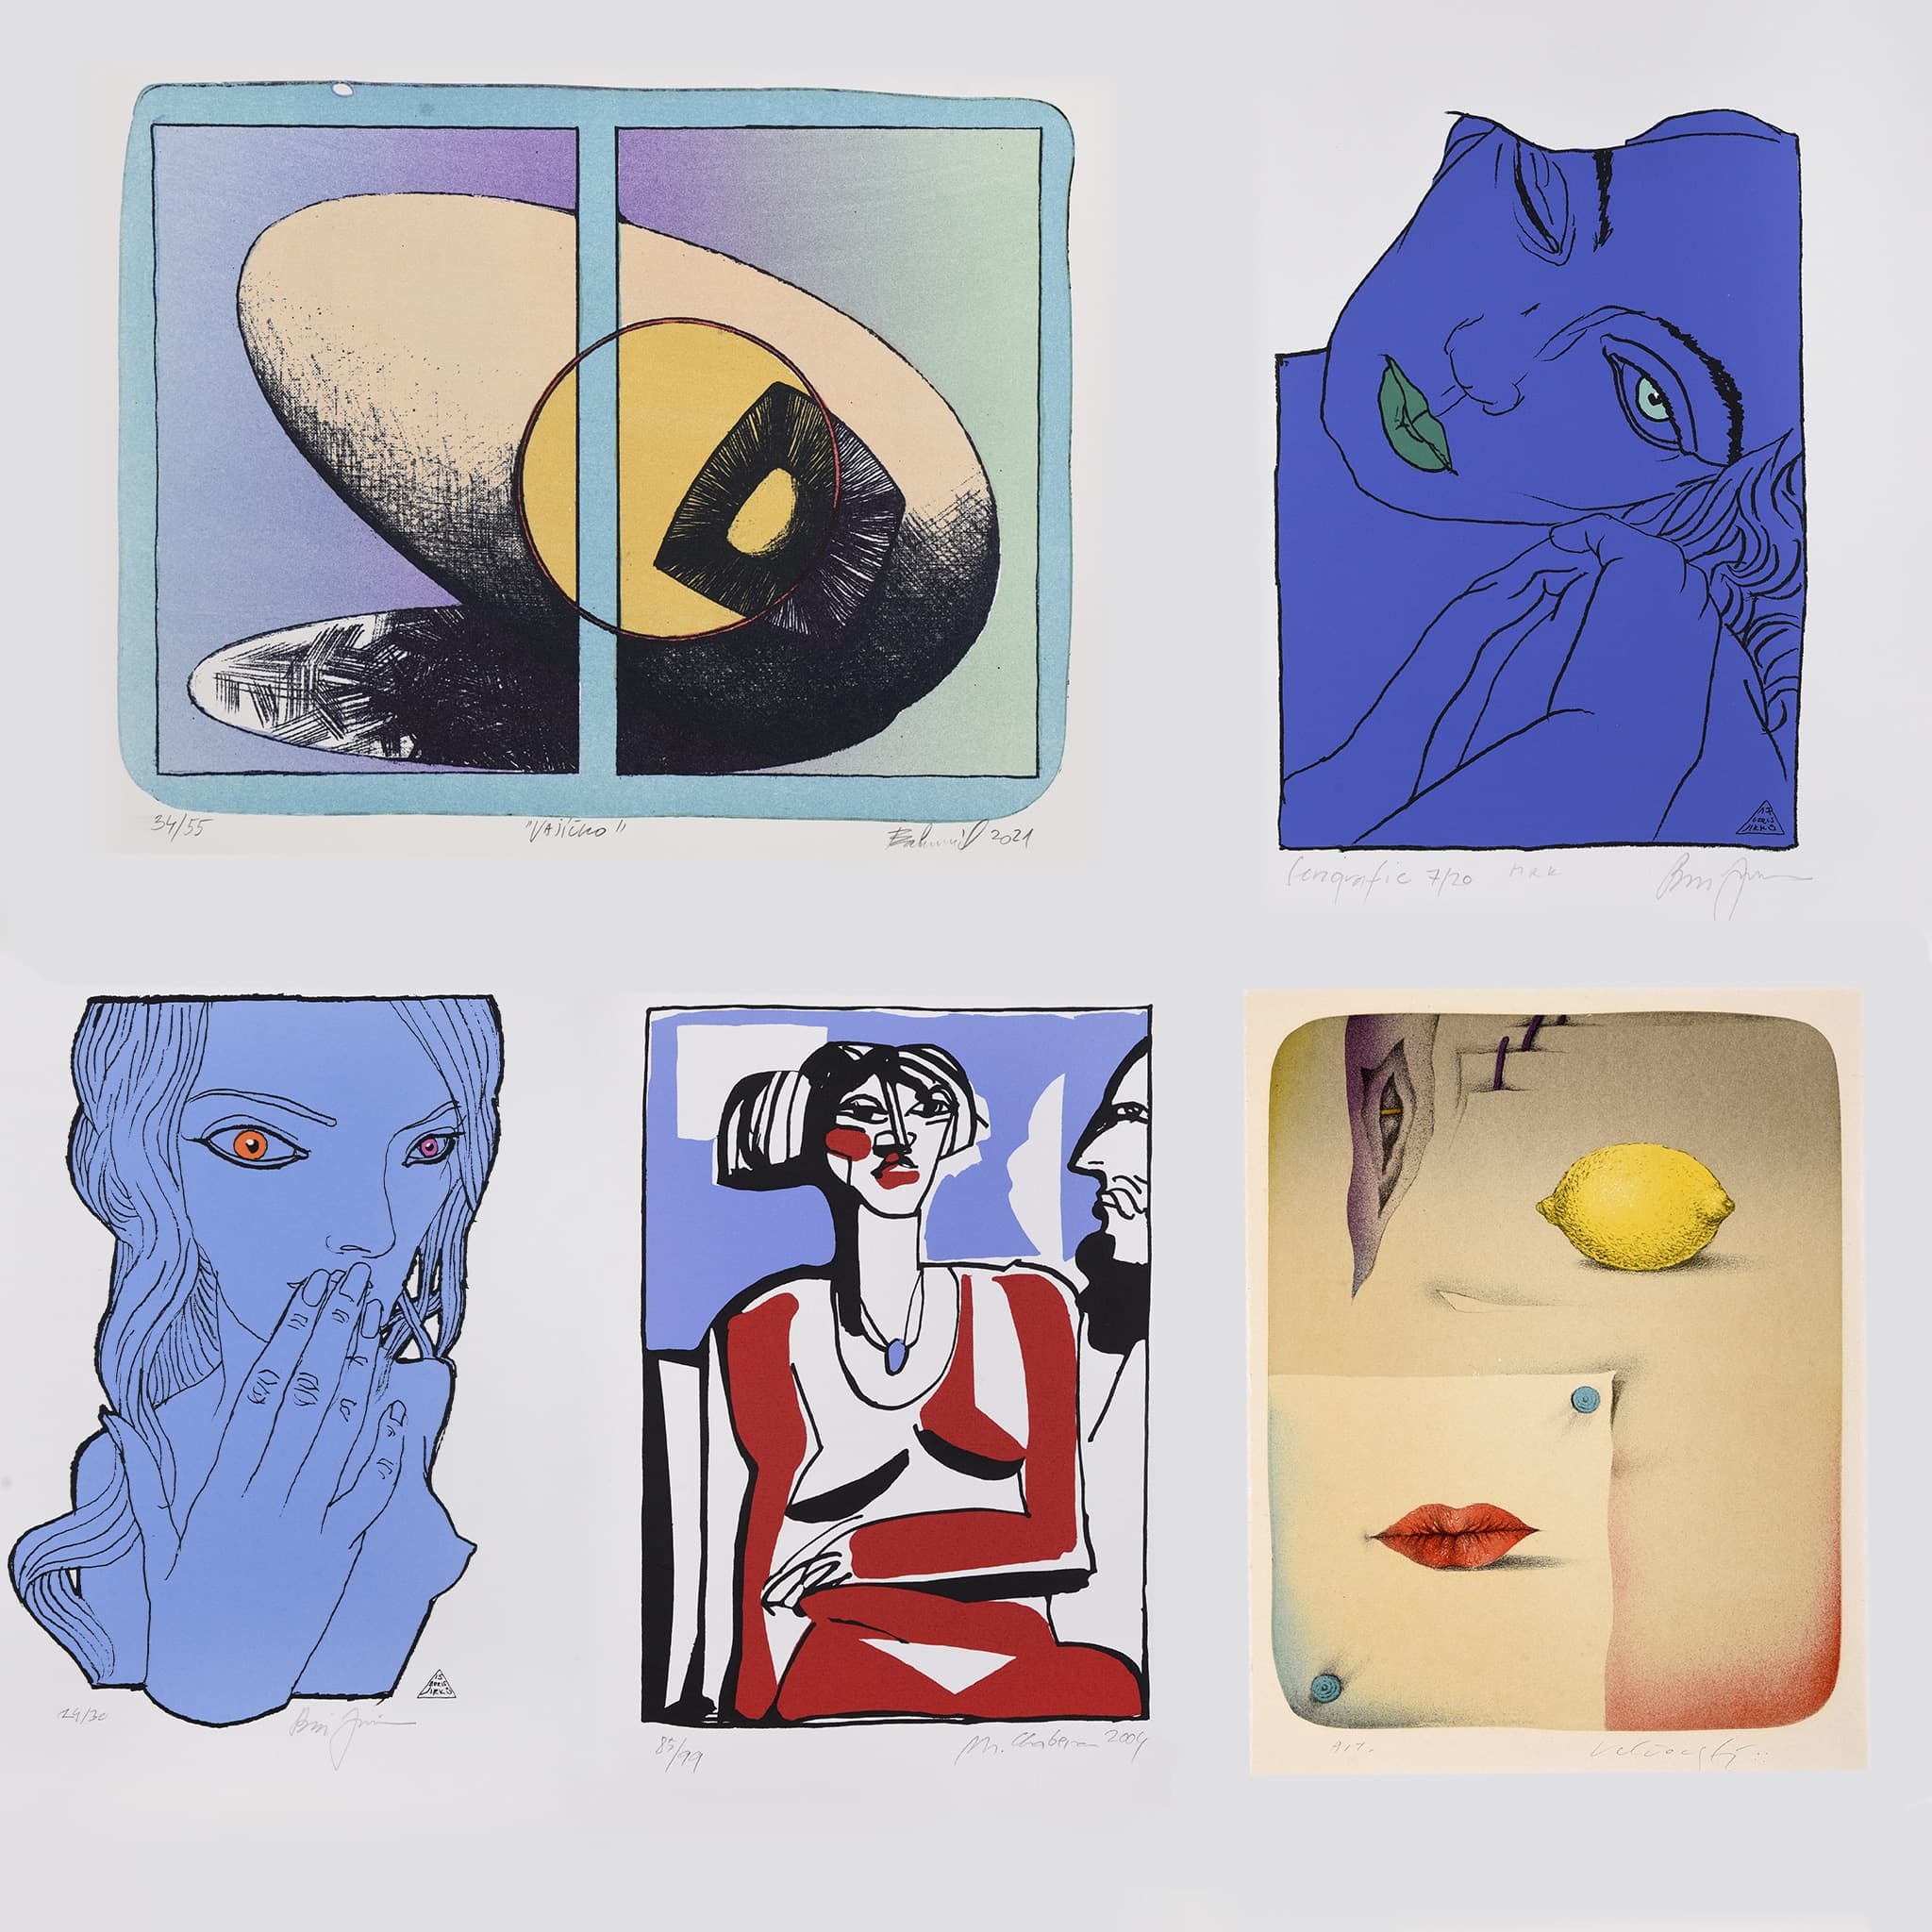 Grafiky v Galerijní ulici od Jakuba Bachoríka, Borise Jirků, Josefa Velčovského nebo Milana Chabery